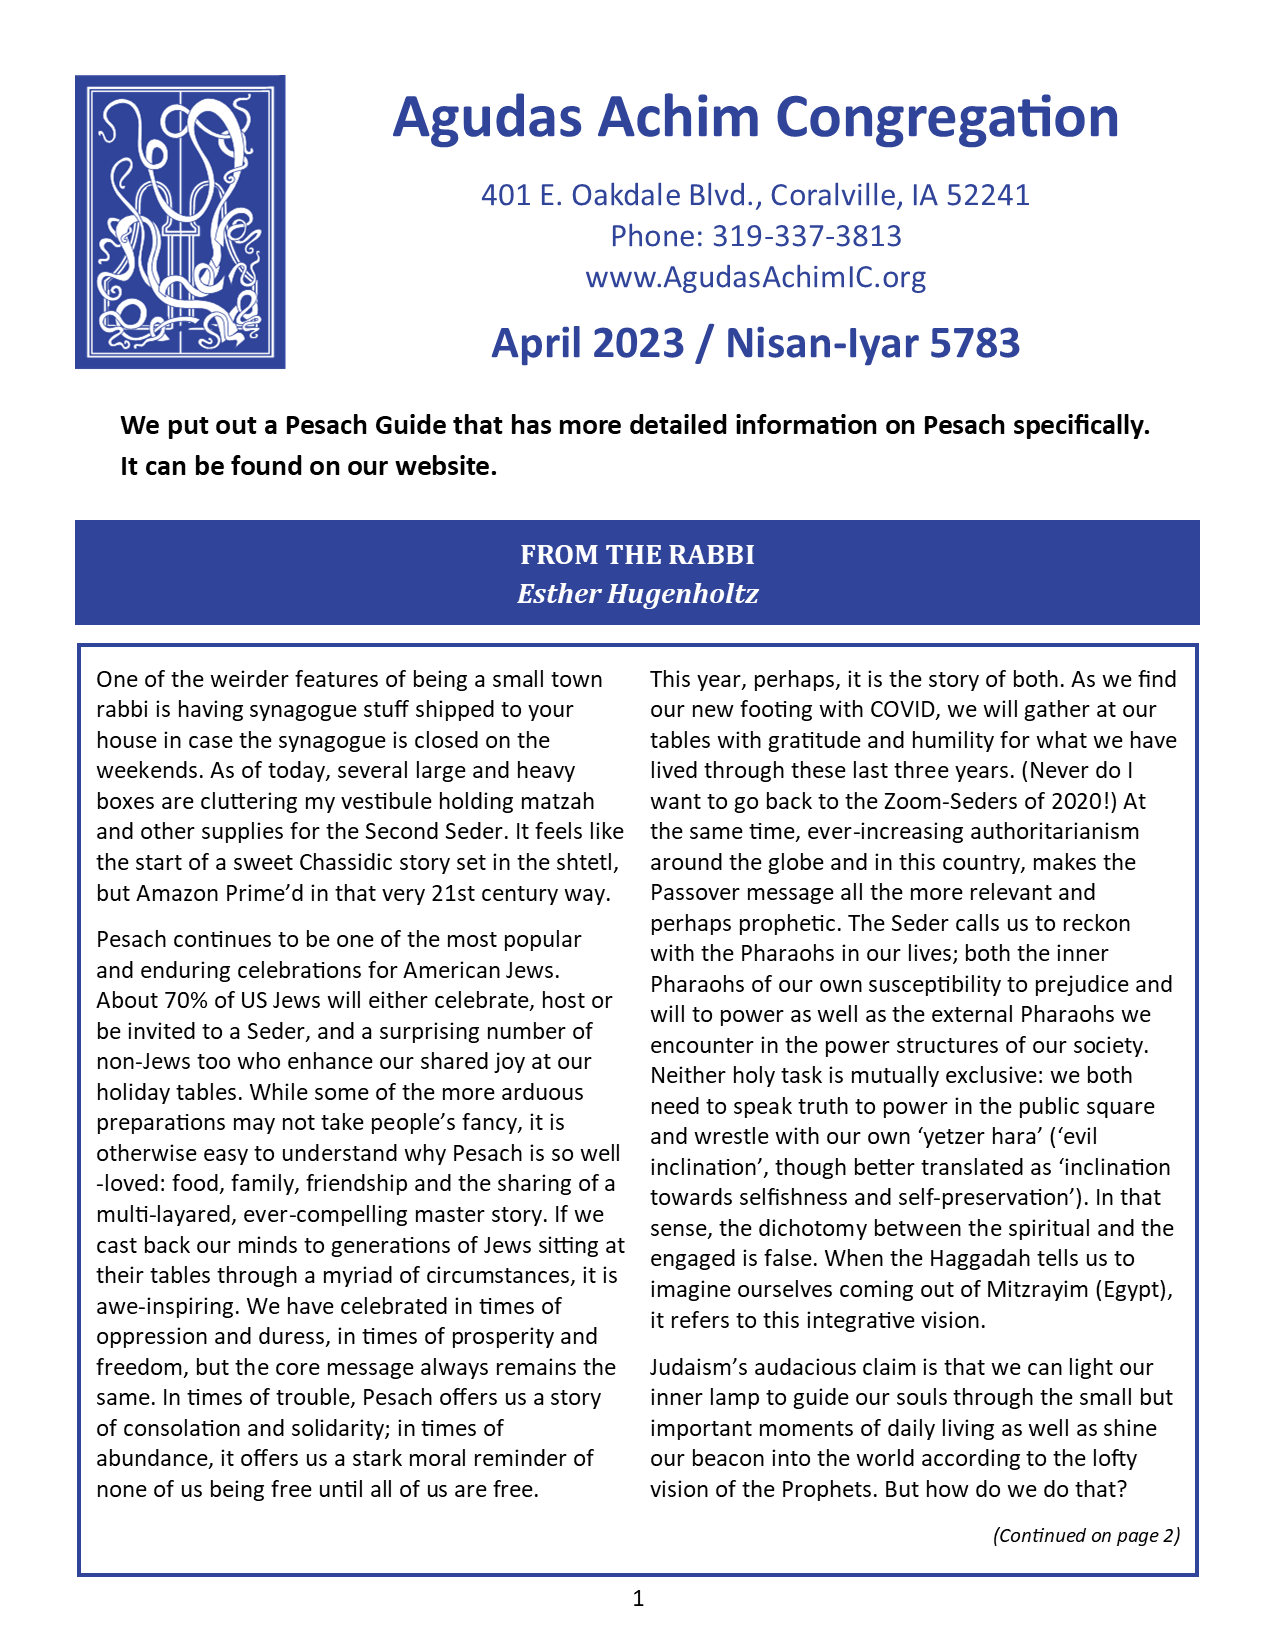 April 2023 Bulletin Cover